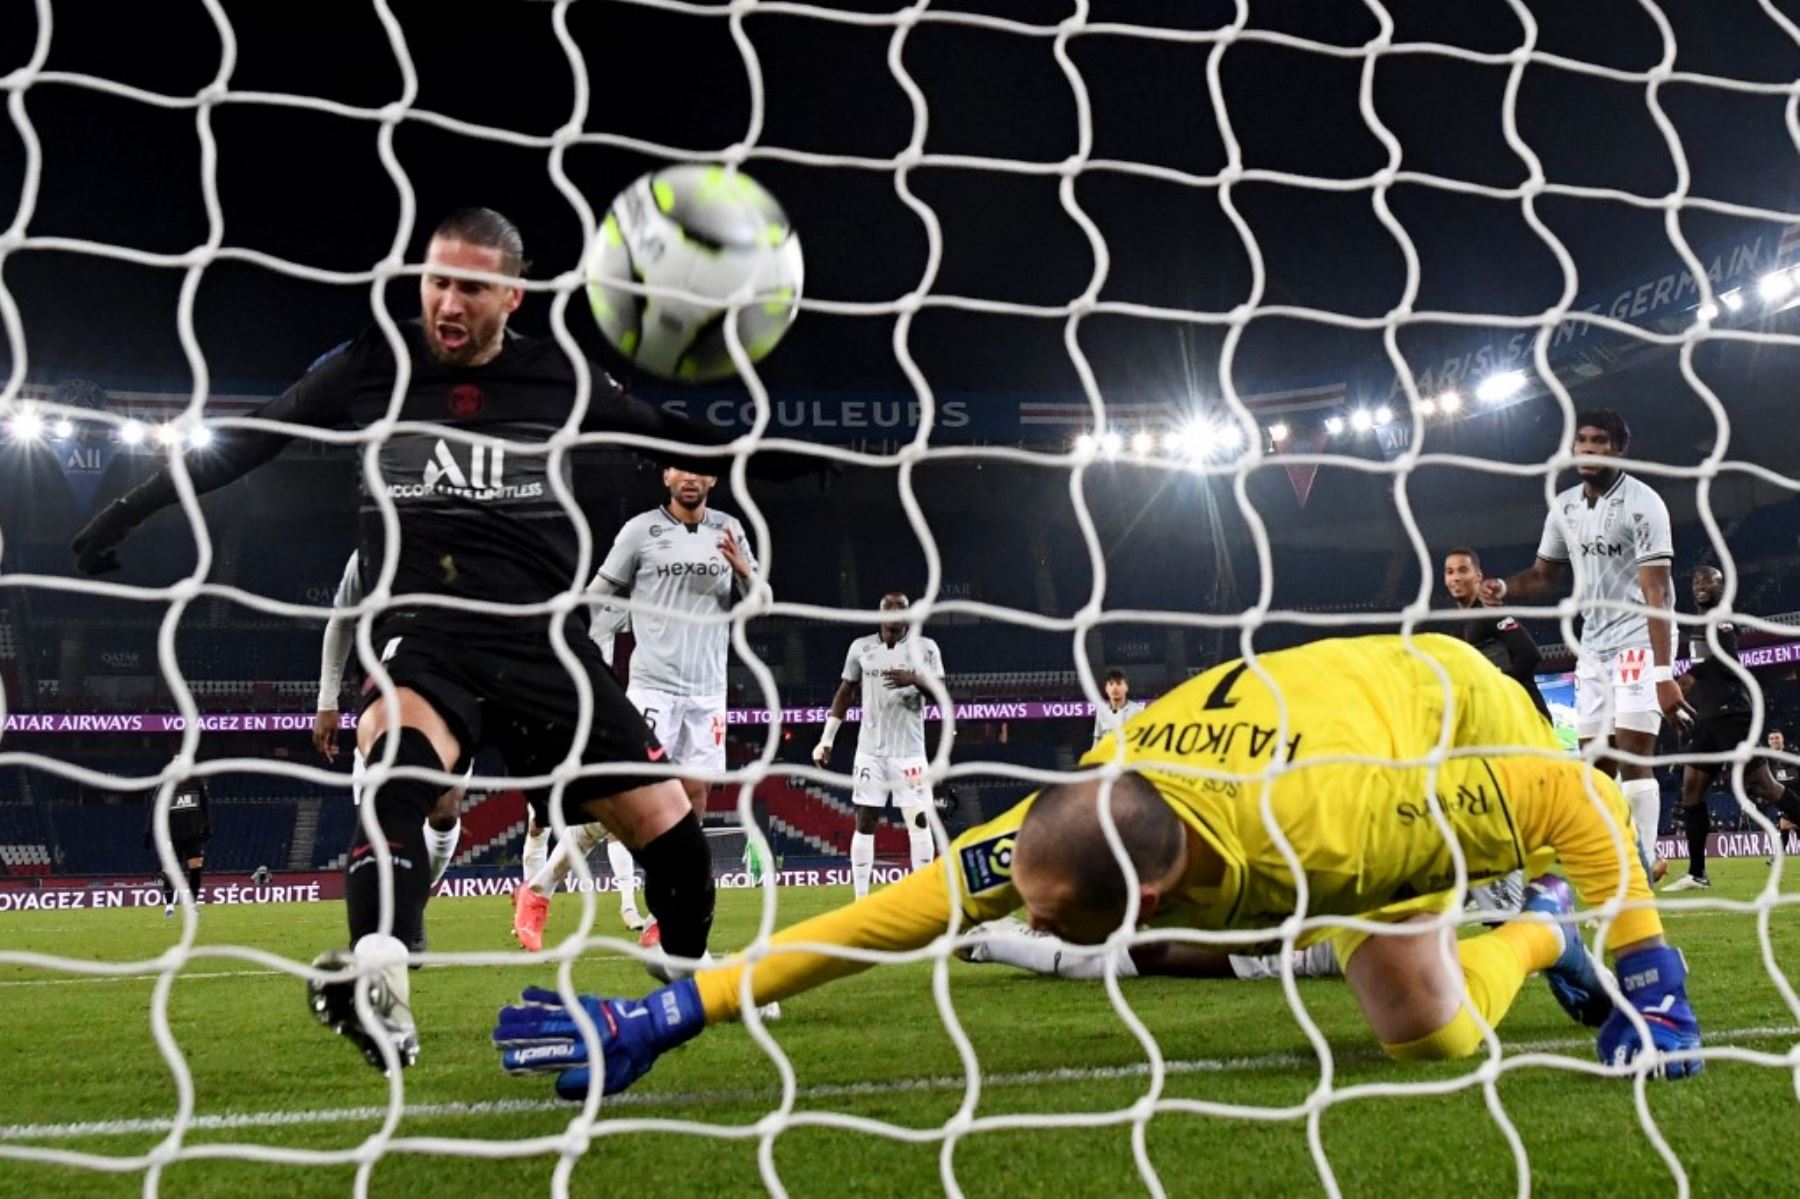 Con primer gol de Ramos en Francia, PSG gana al Reims en regreso de Messi